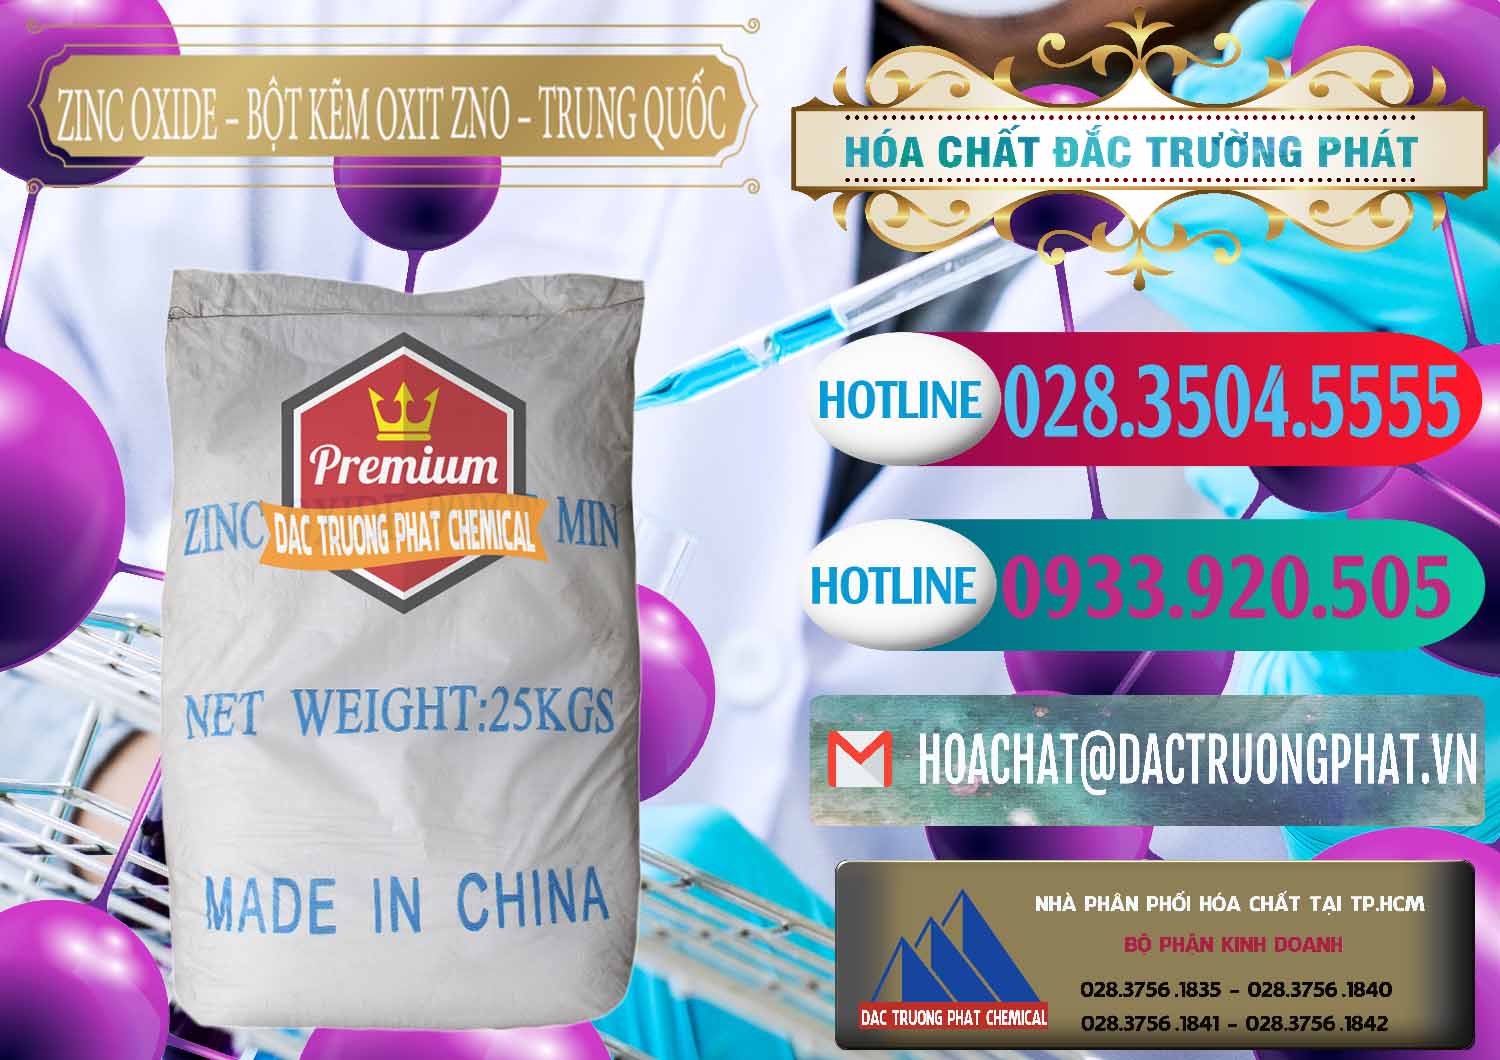 Nơi bán _ phân phối Zinc Oxide - Bột Kẽm Oxit ZNO Trung Quốc China - 0182 - Đơn vị kinh doanh và phân phối hóa chất tại TP.HCM - truongphat.vn